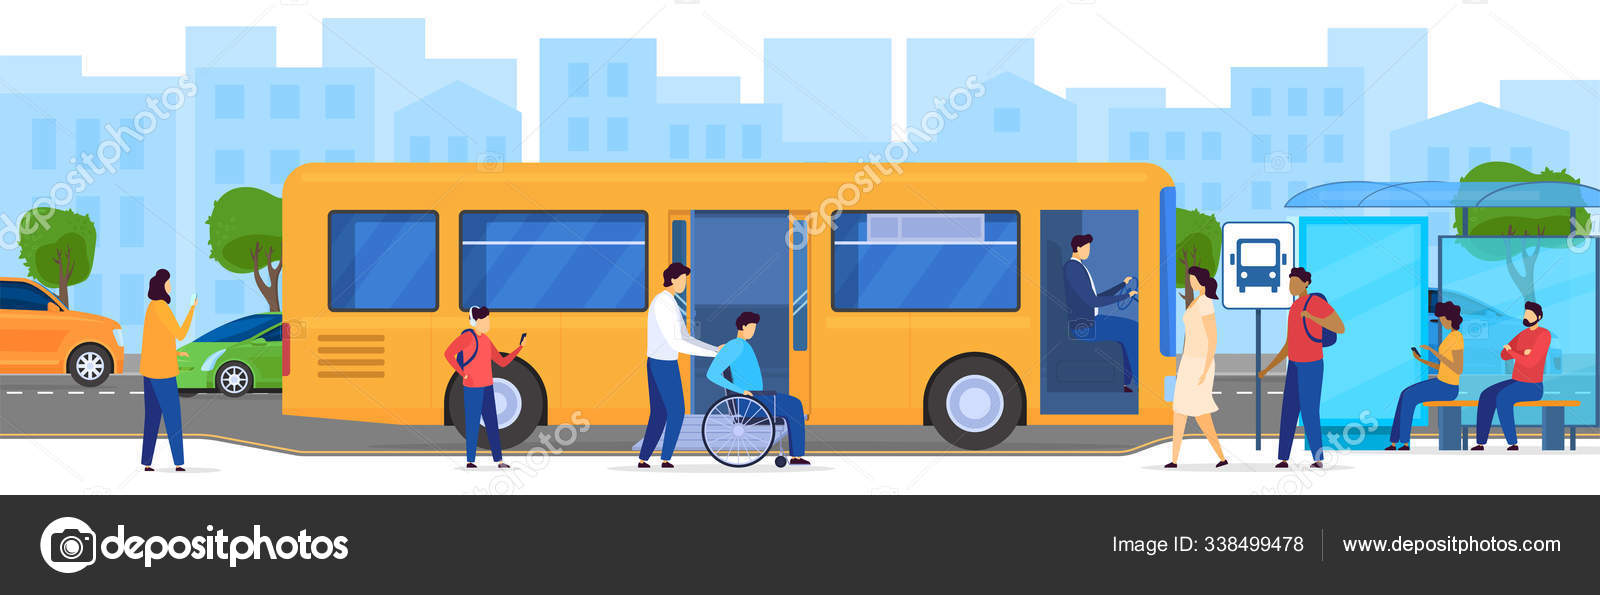 Аня ждет автобус на остановке изобразите. Рисунок ожидай автобус на остановке. Сюжетная картинка автобусная остановка. Остановка для инвалидов. Рисунок люди стоят на основке.